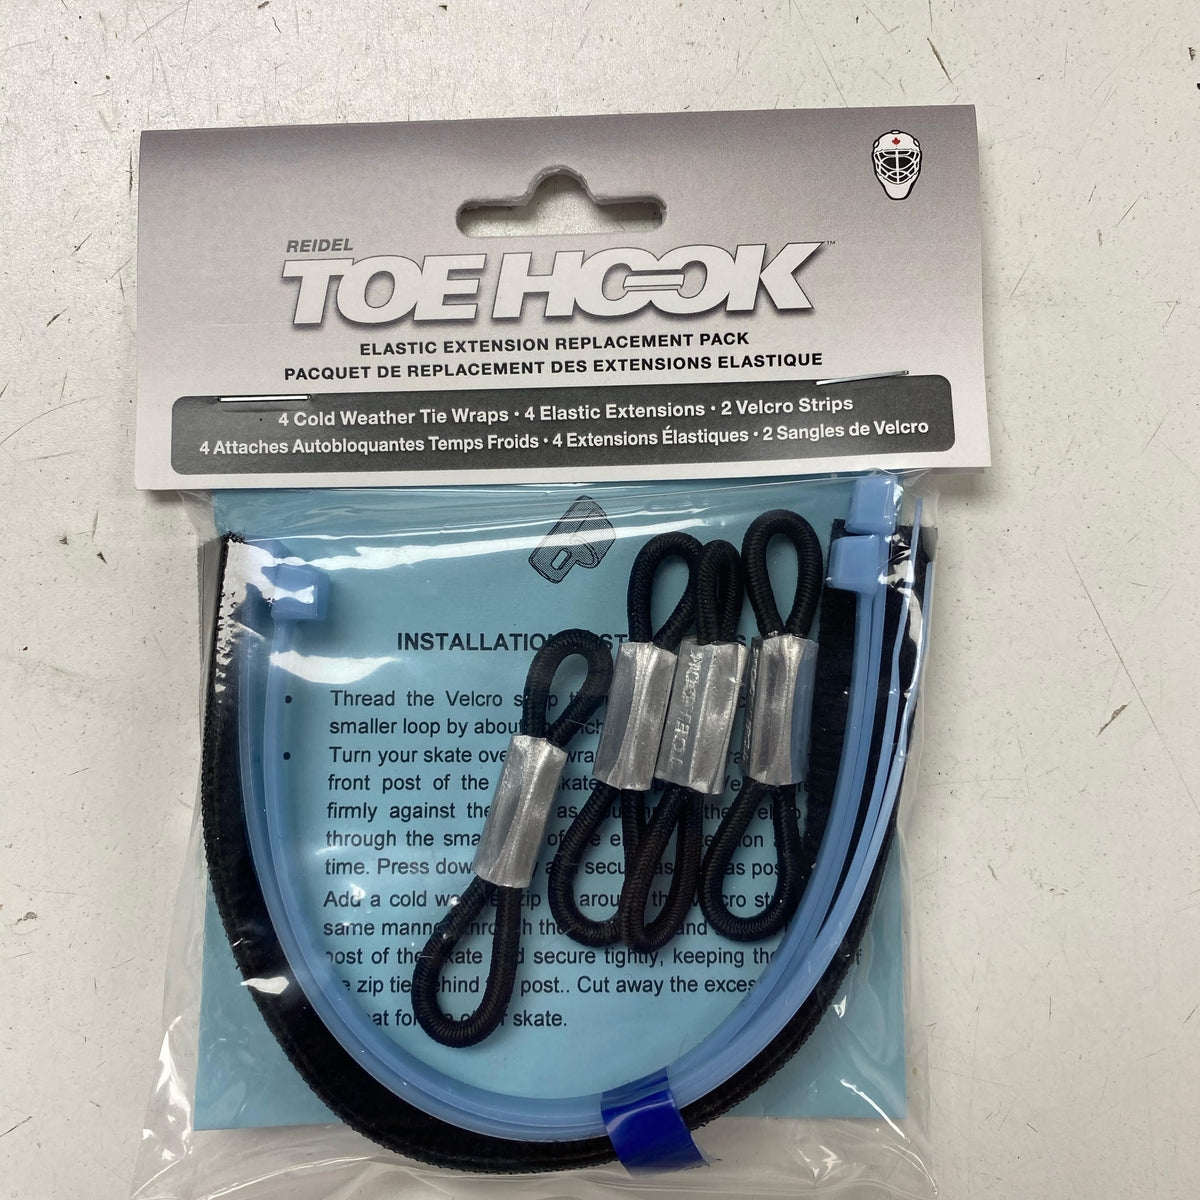 ToeHook Elastic Extension Pack